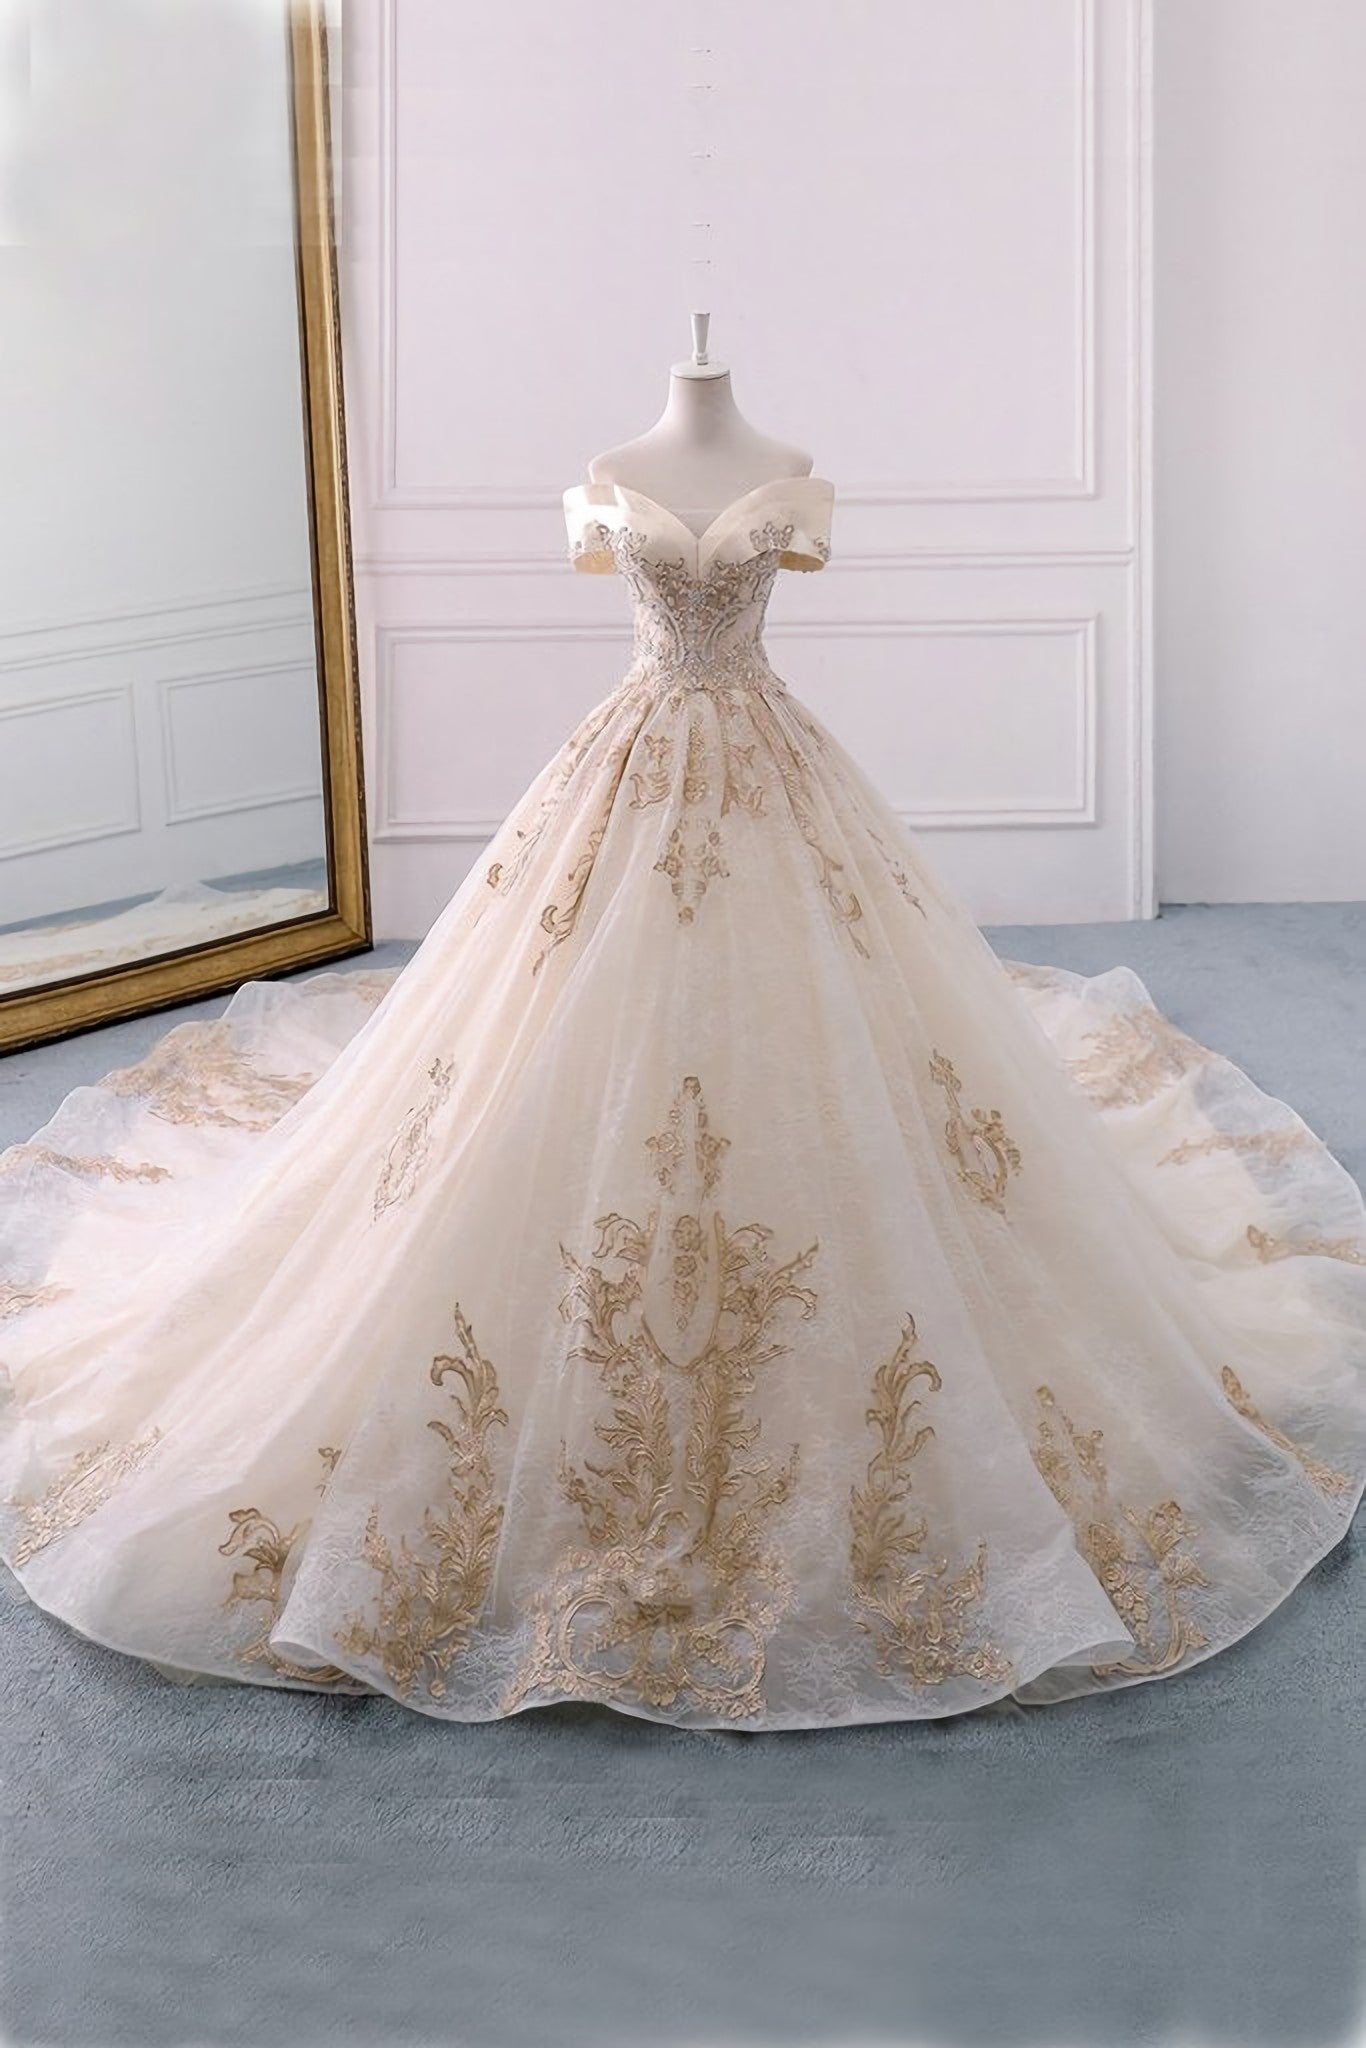 Wedding Dress Pinterest, Off The Shoulder Ball Gown Sweetheart Wedding Dress, Long Appliques Bridal Dress